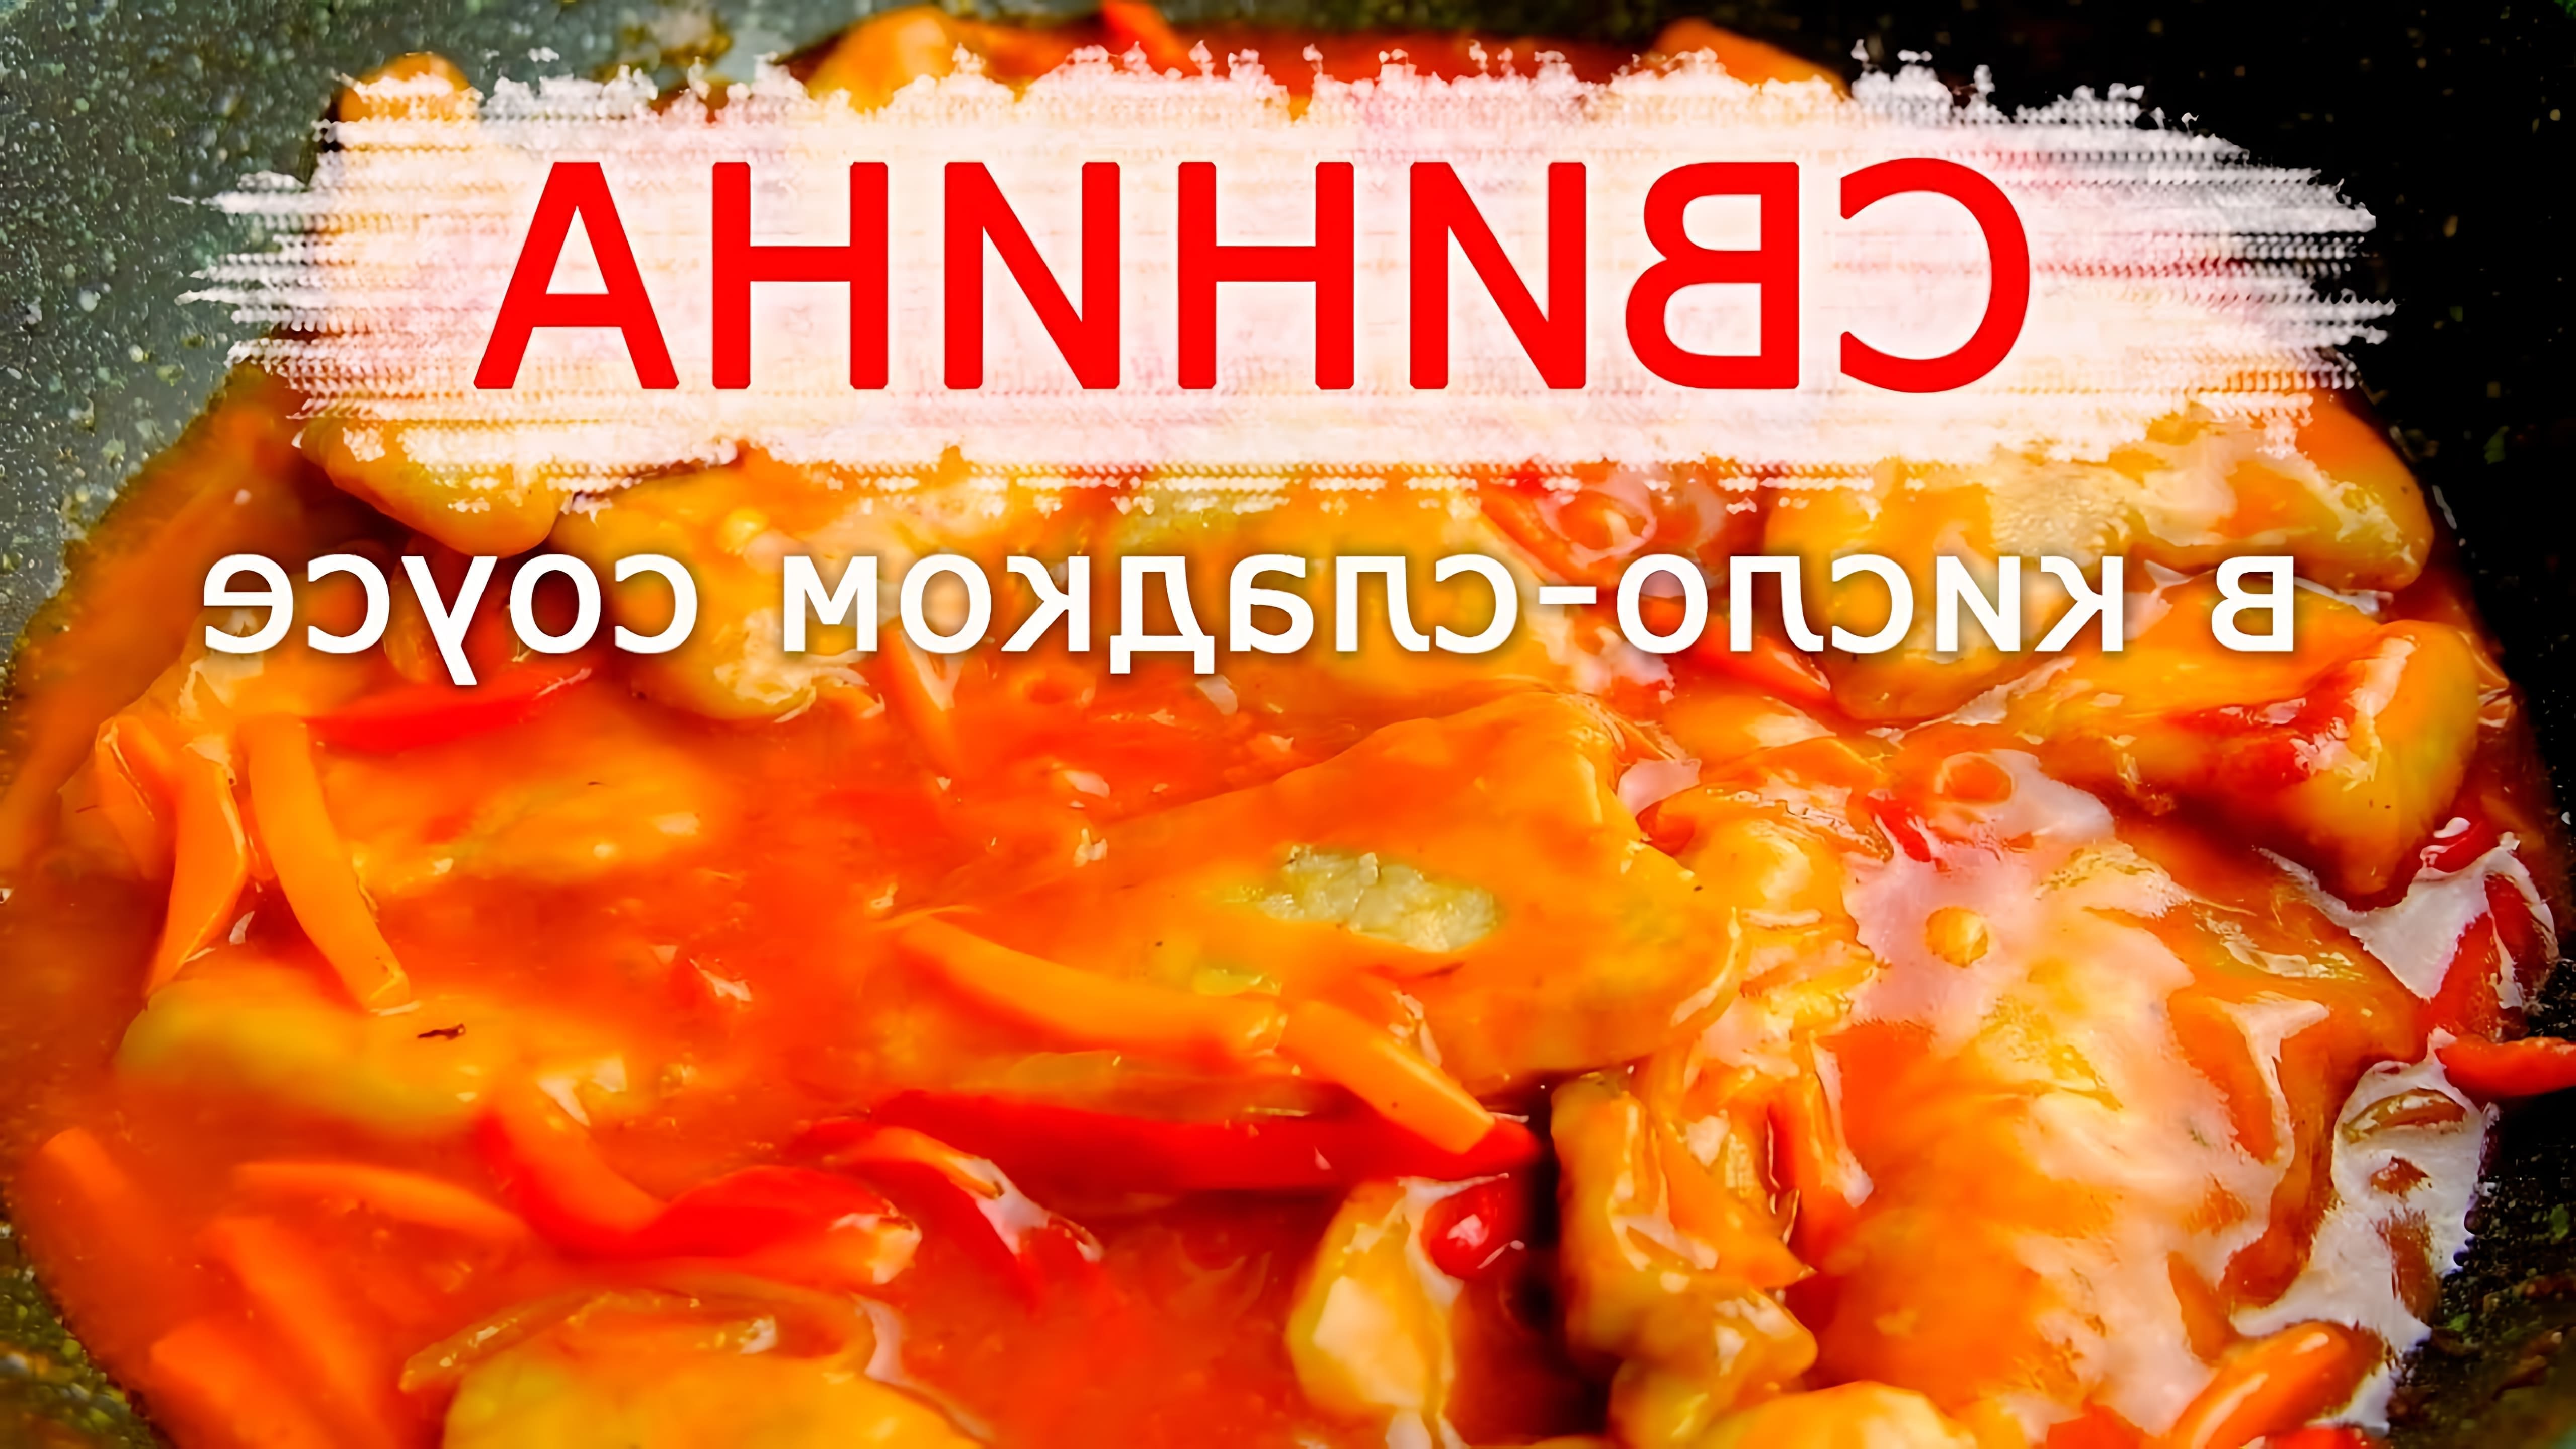 В этом видео-ролике будет показан процесс приготовления свинины в кисло-сладком соусе, популярного блюда китайской кухни